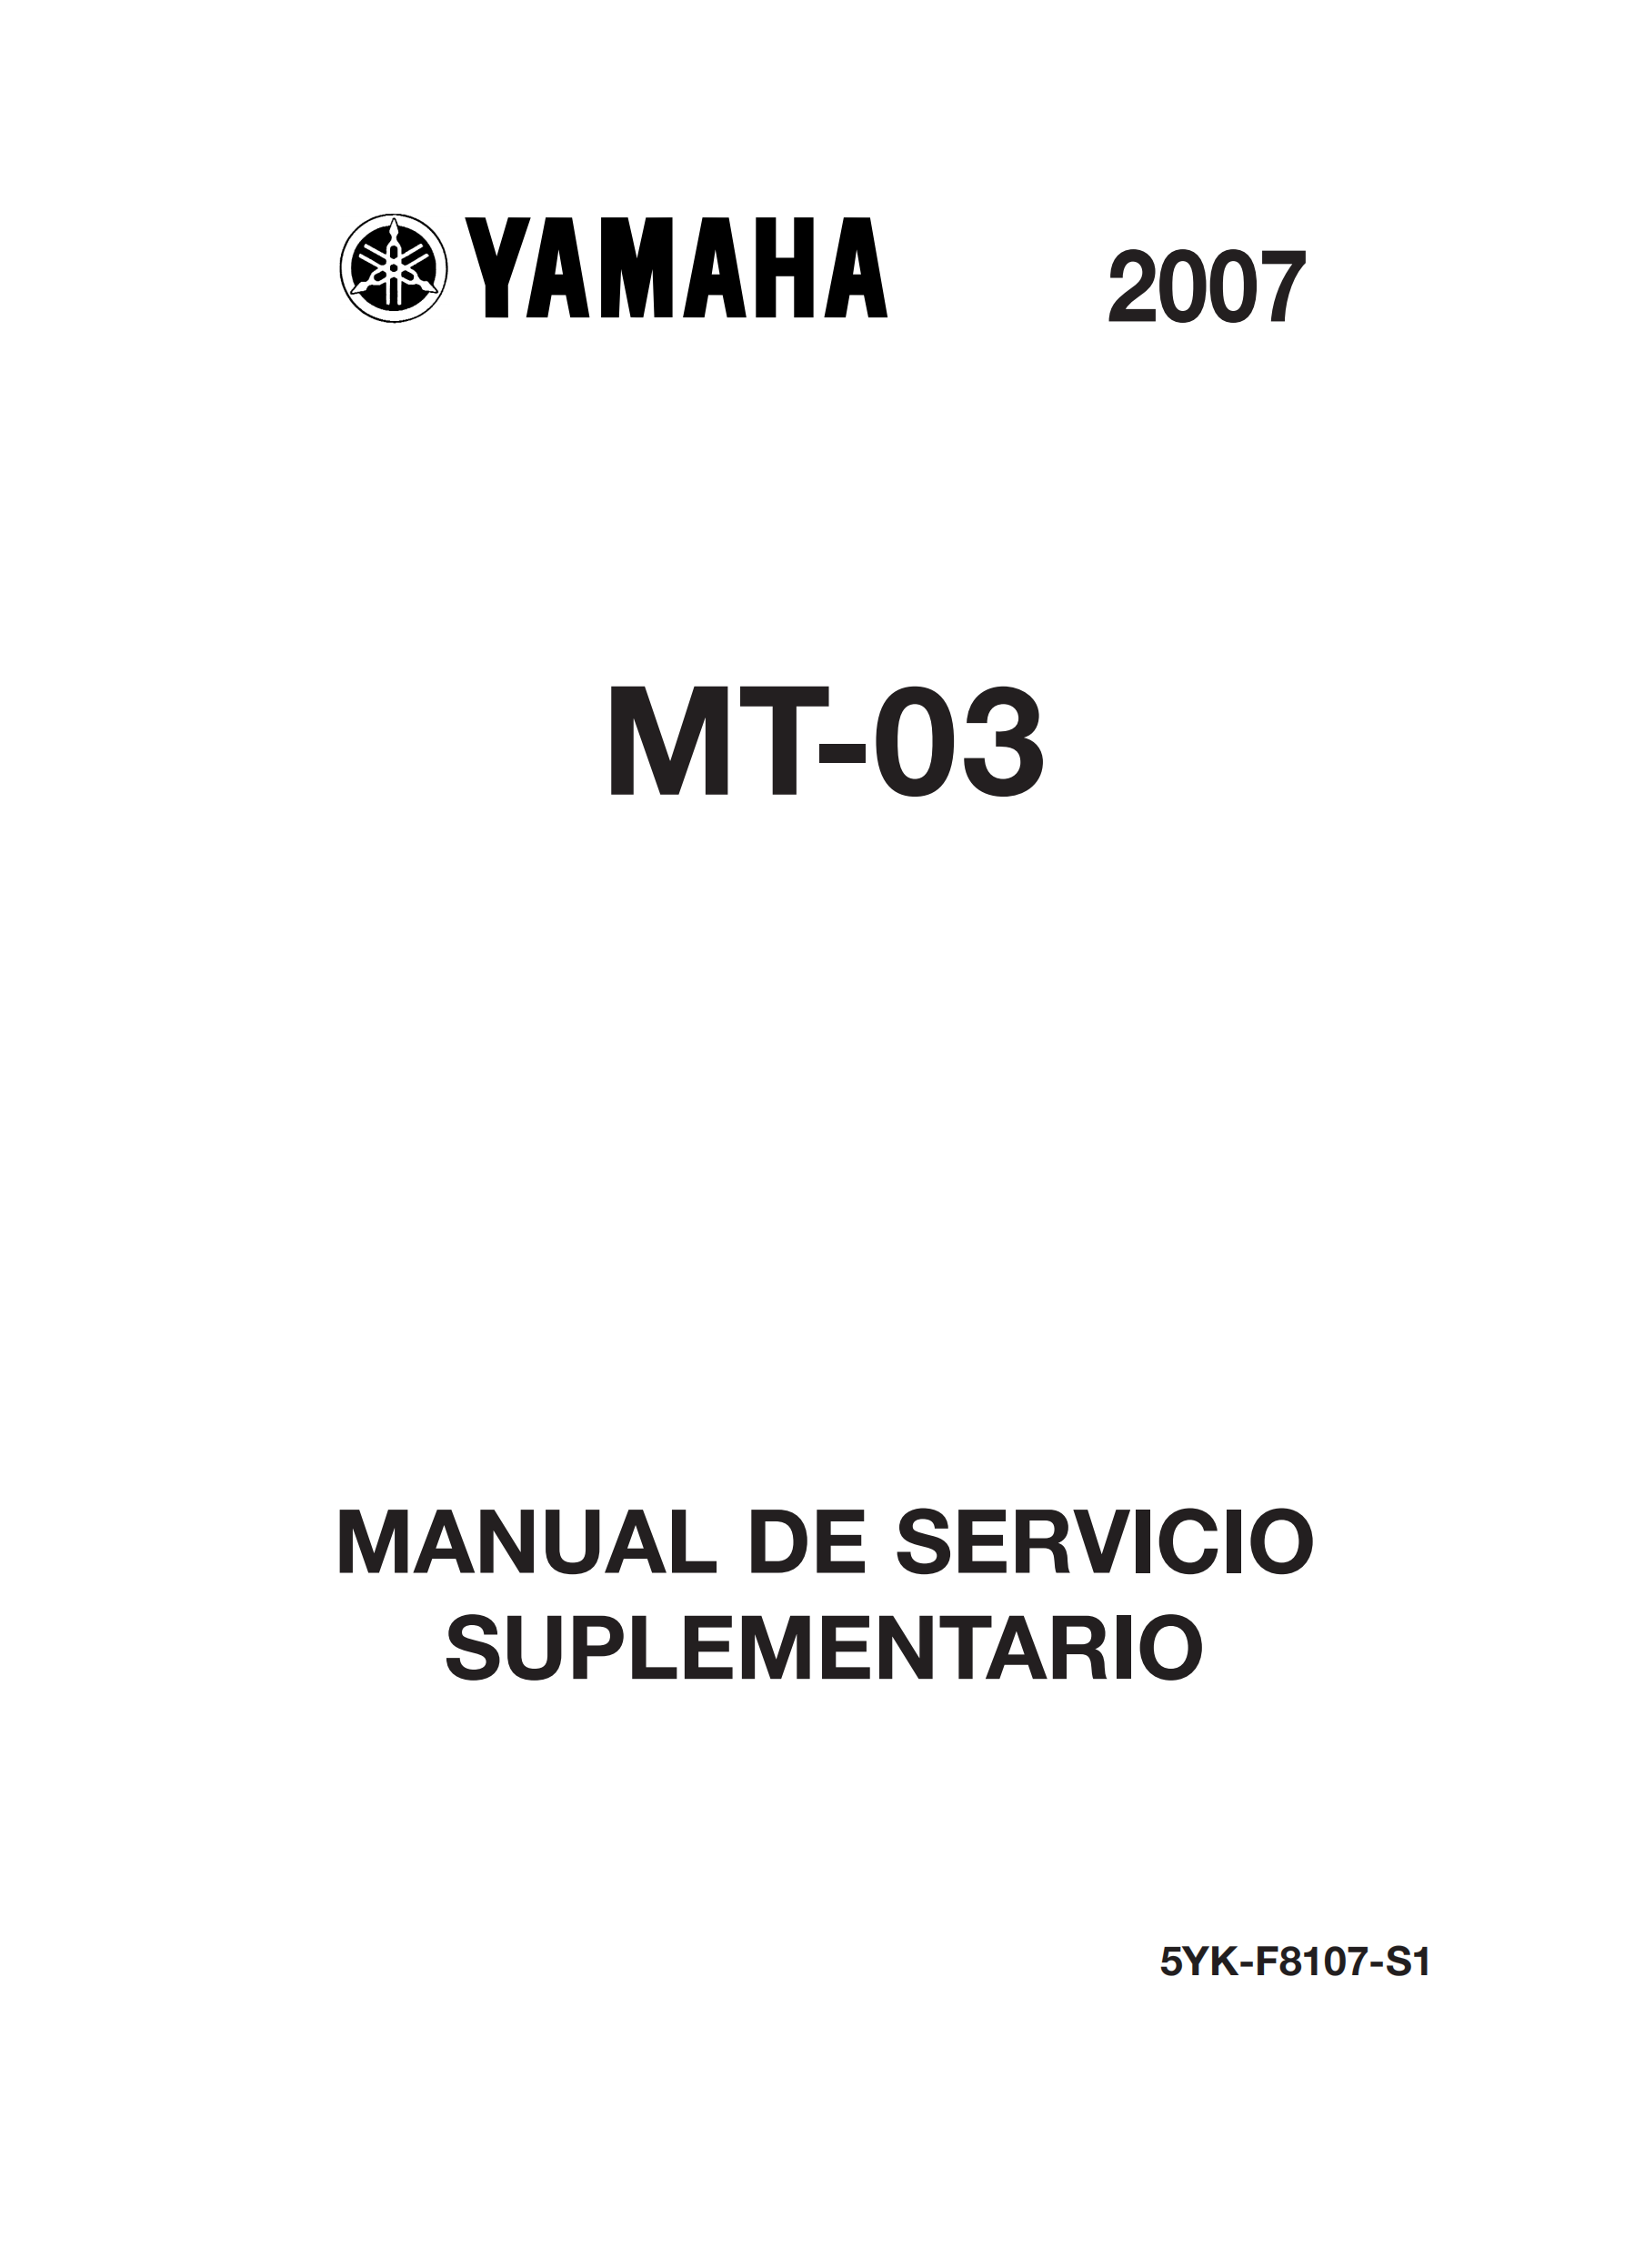 原版西班牙语2007年雅马哈mt03 660维修手册yamaha mt03 660补充维修手册插图